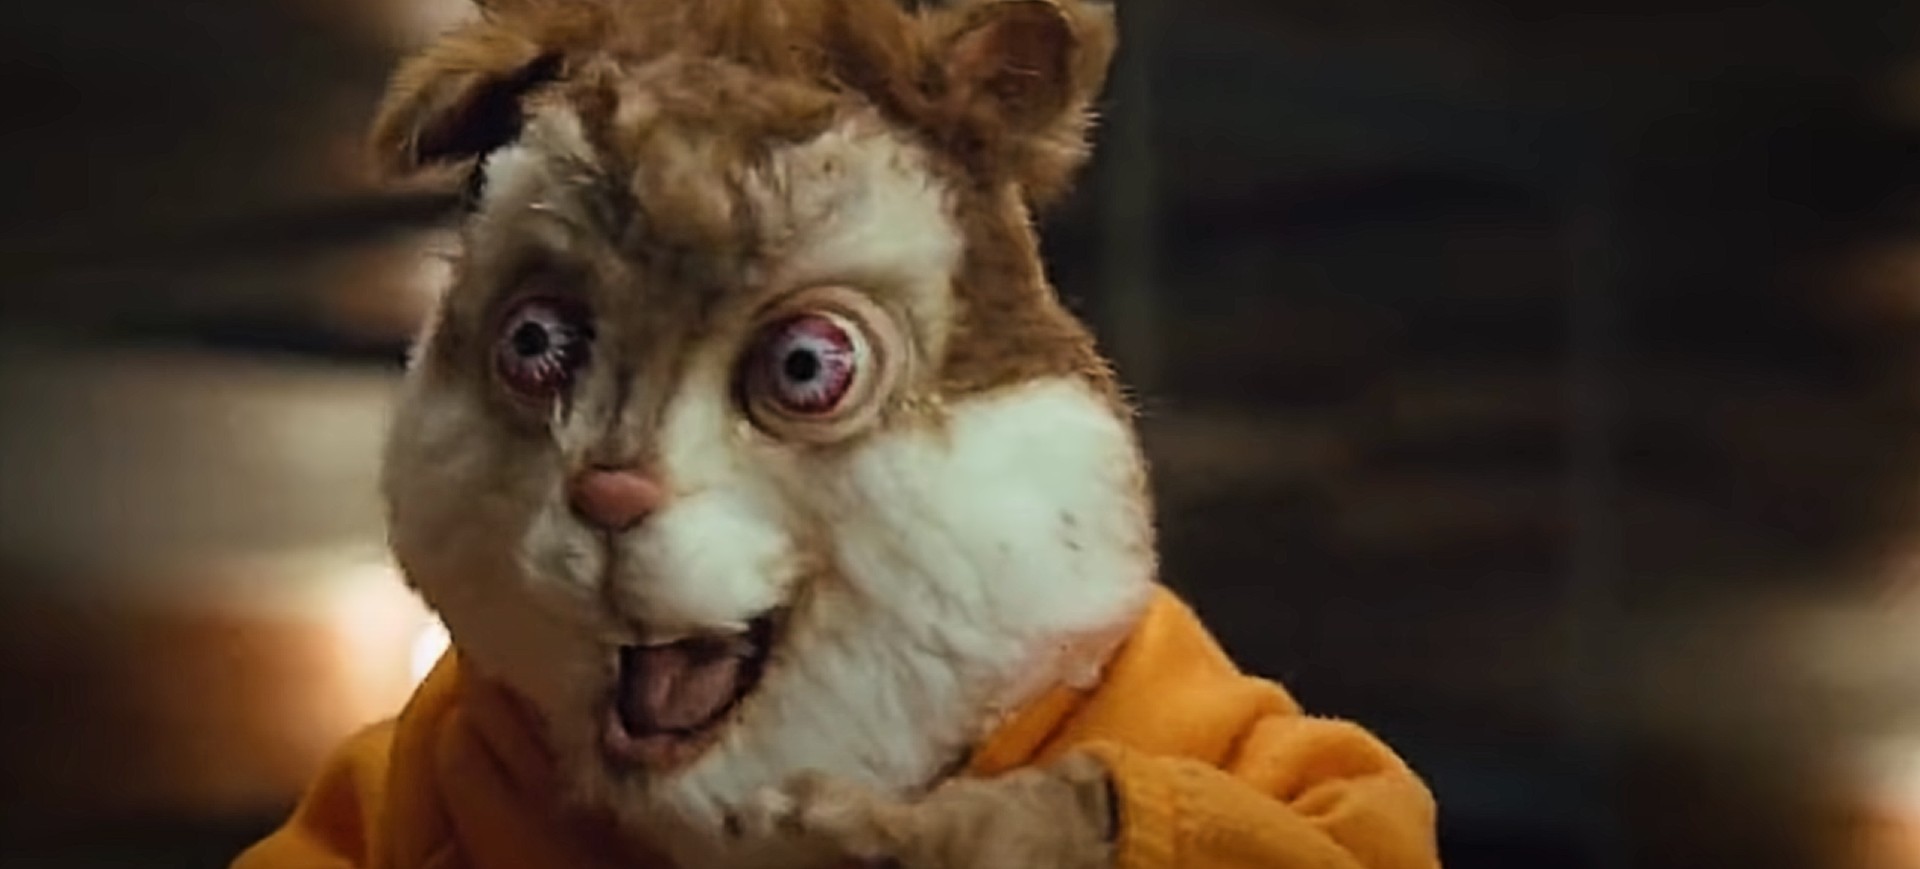 Captura de tela da paródia Disaster Movie, disponível na Amazon Prime; na foto a imagem de Alvin, o esquilo, feito de pelúcia e com o rosto alterado